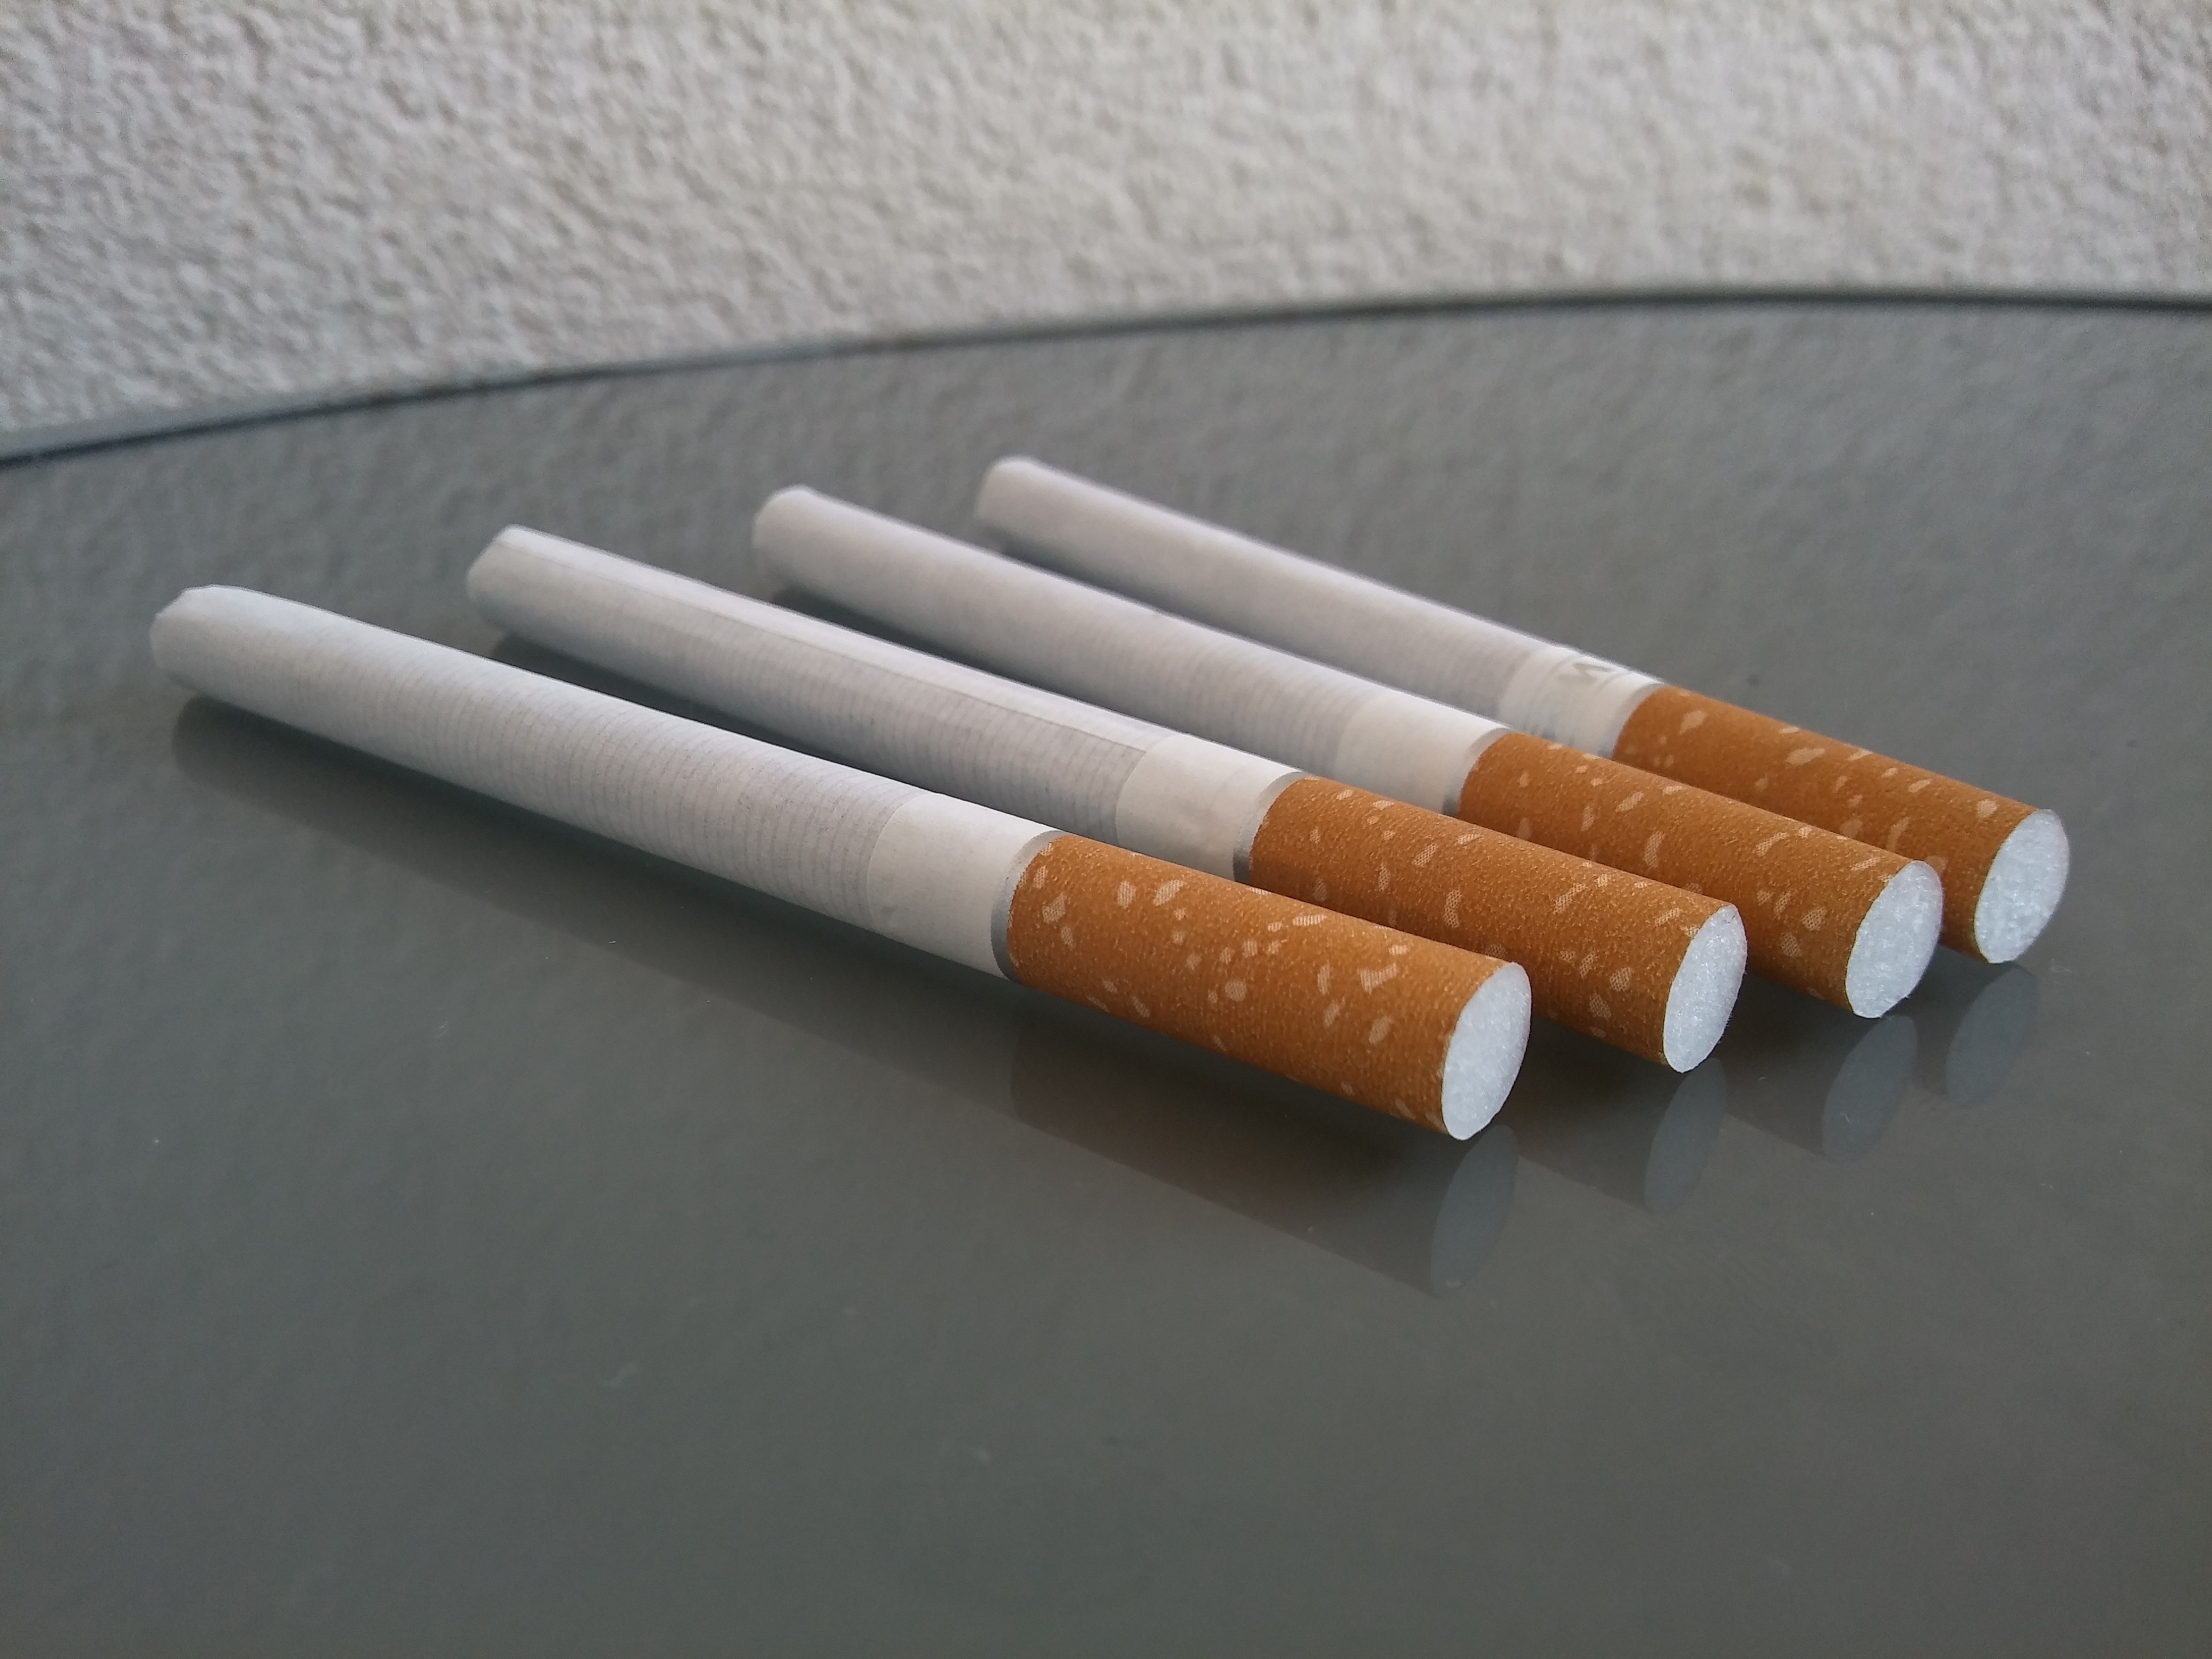 4 orange and white cigarette sticks